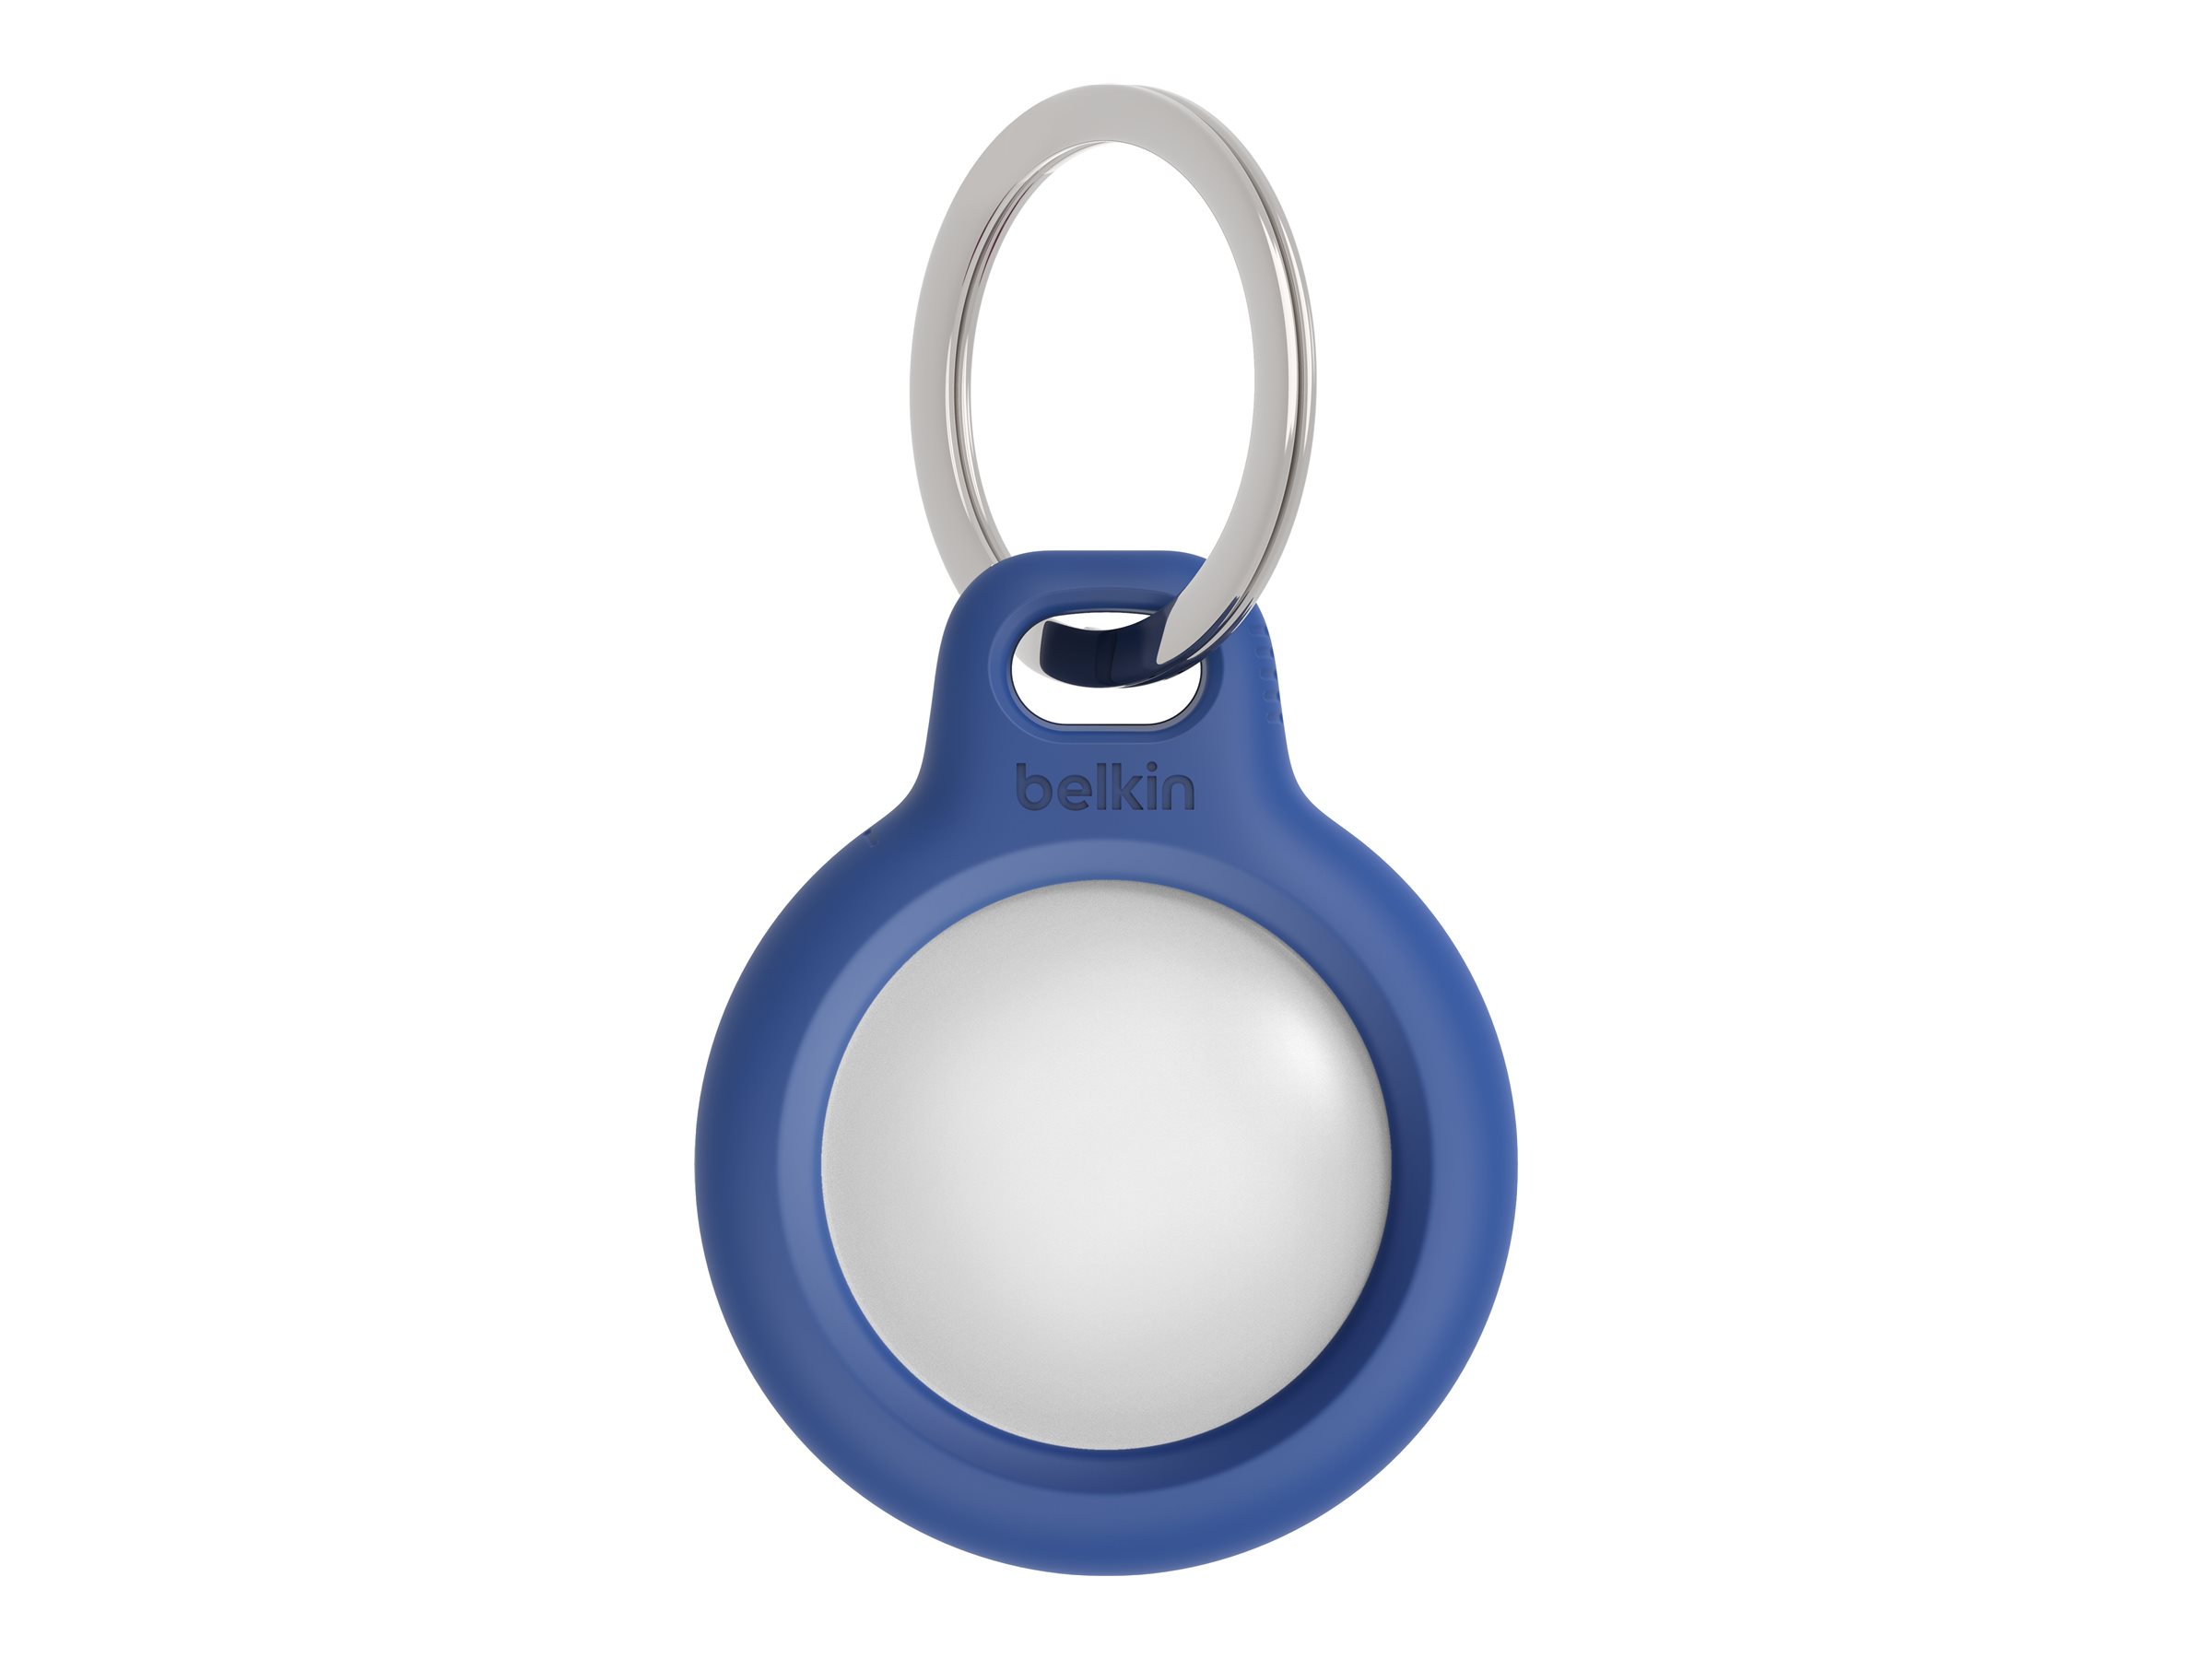 Belkin - Support sécurisé pour étiquette Bluetooth anti-perte - bleu - pour Apple AirTag - F8W973BTBLU - accessoires divers